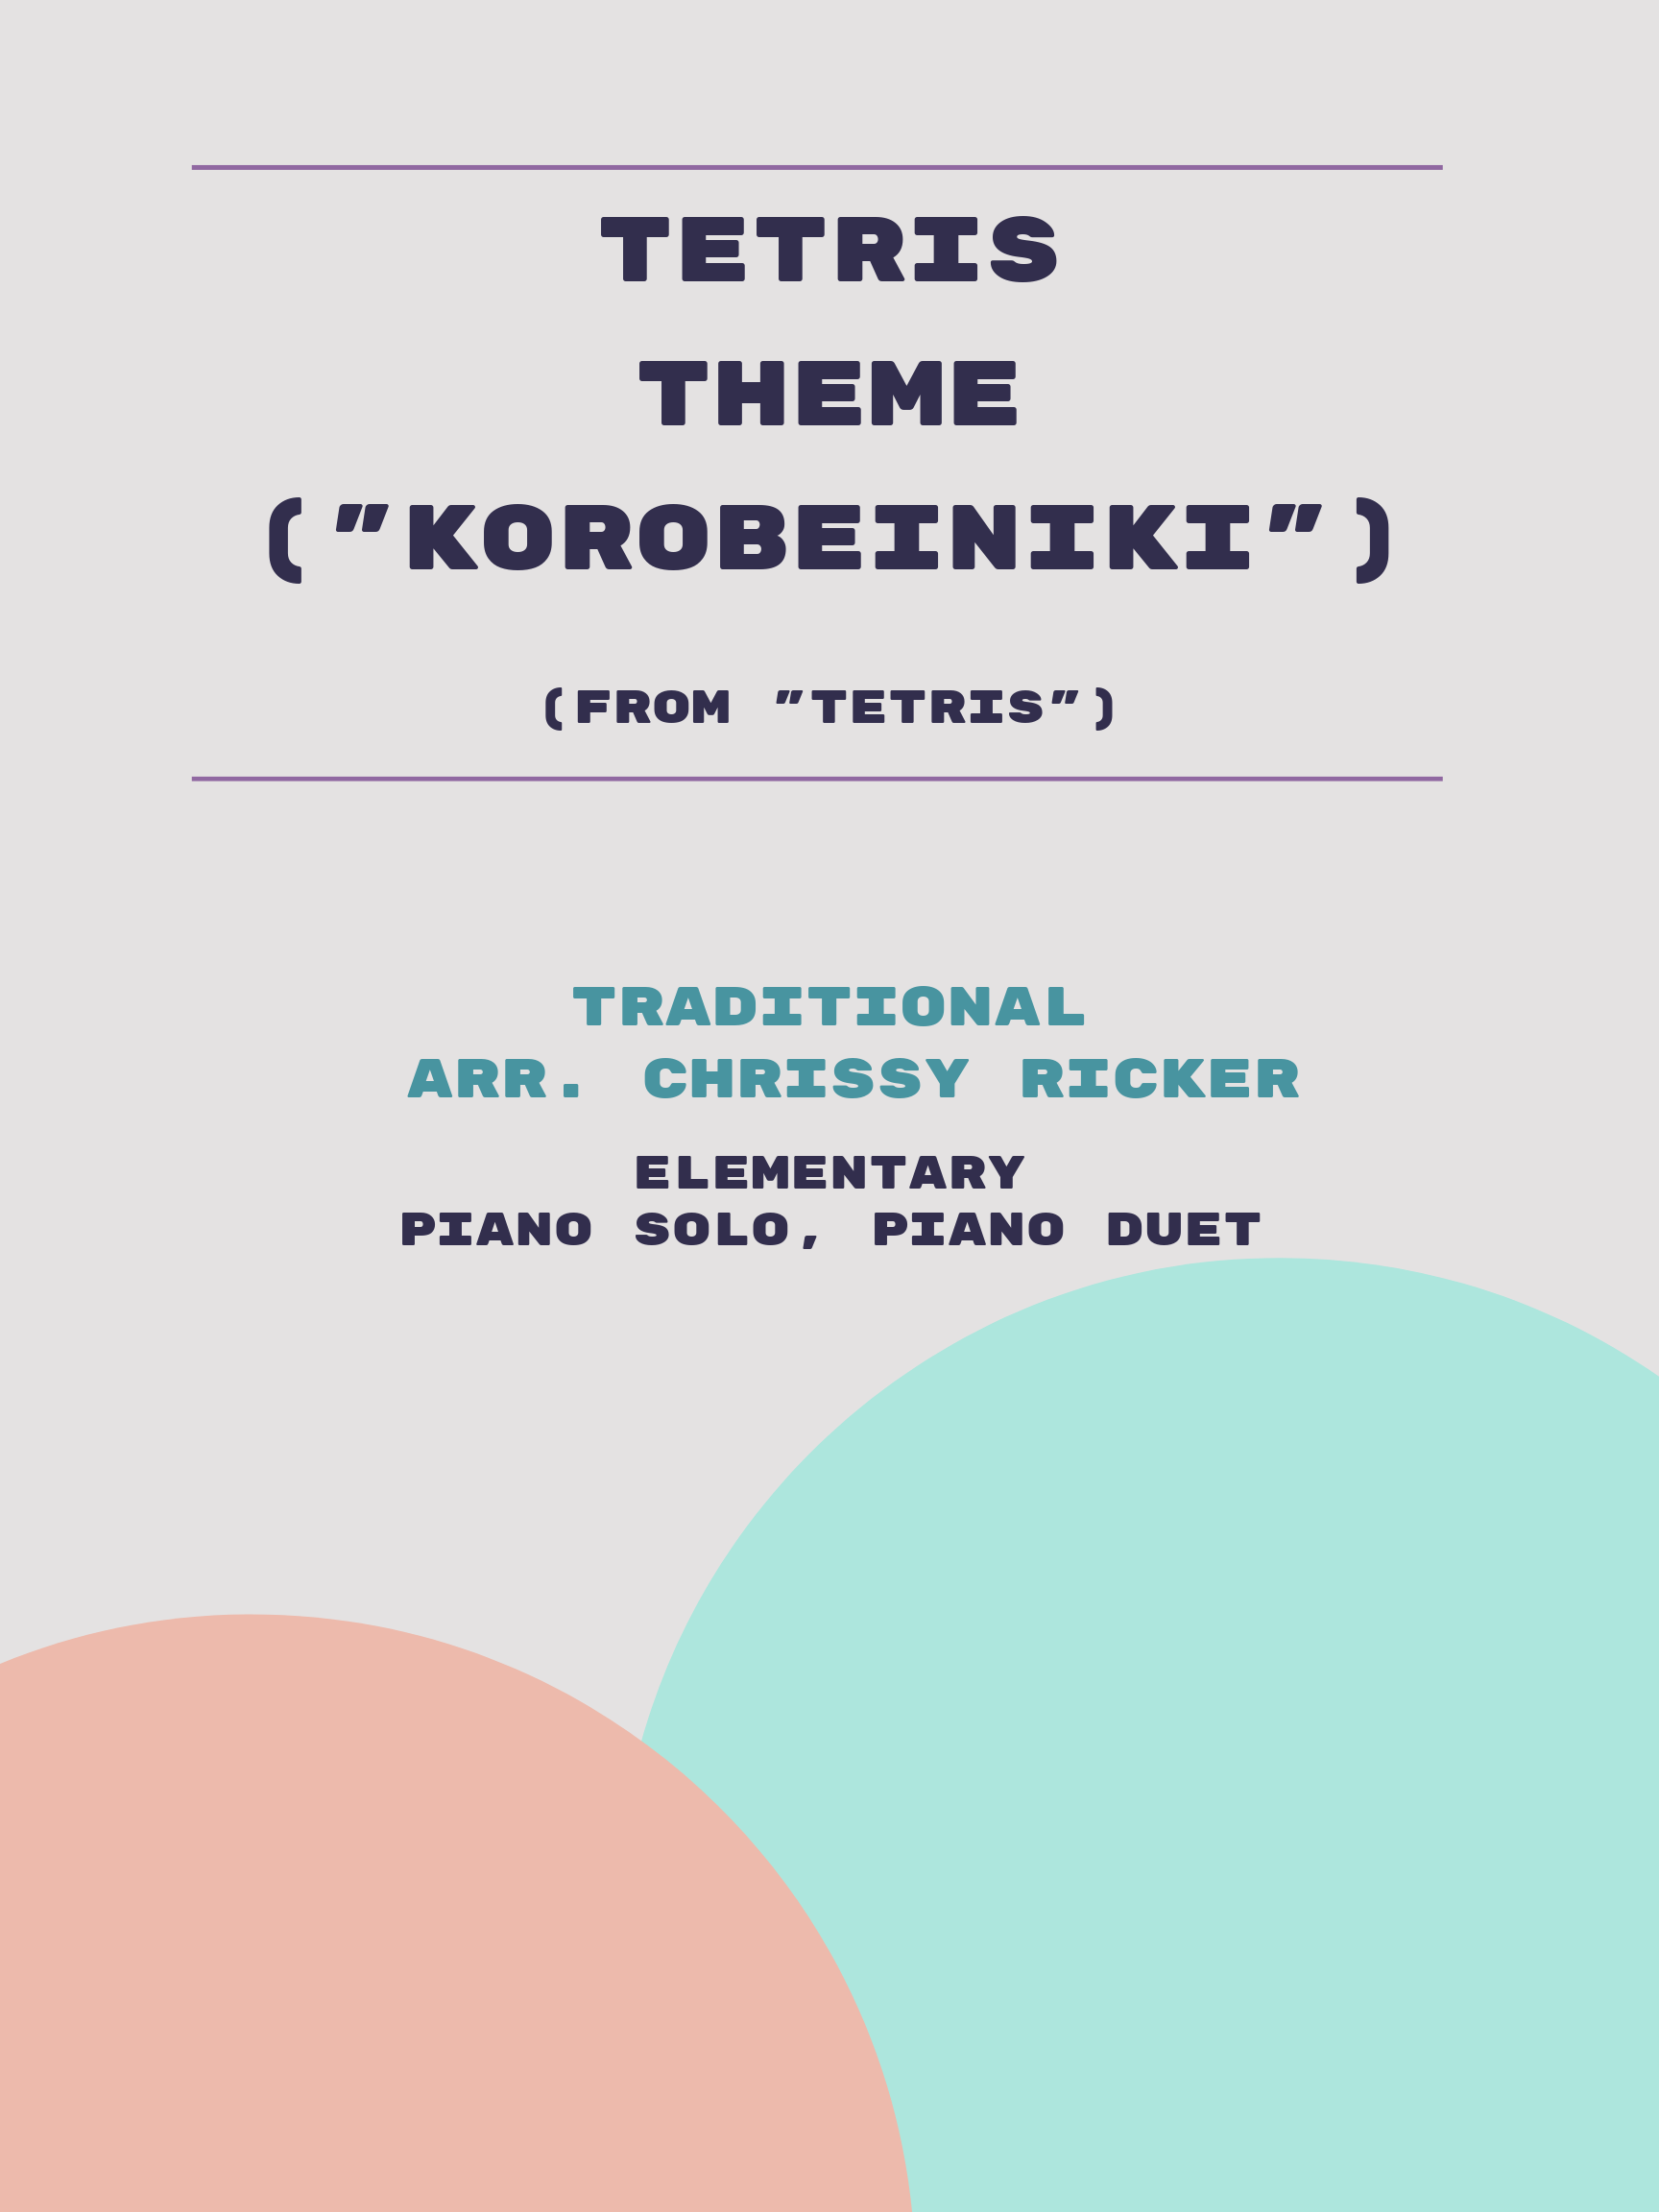 Tetris Theme ("Korobeiniki") Sample Page